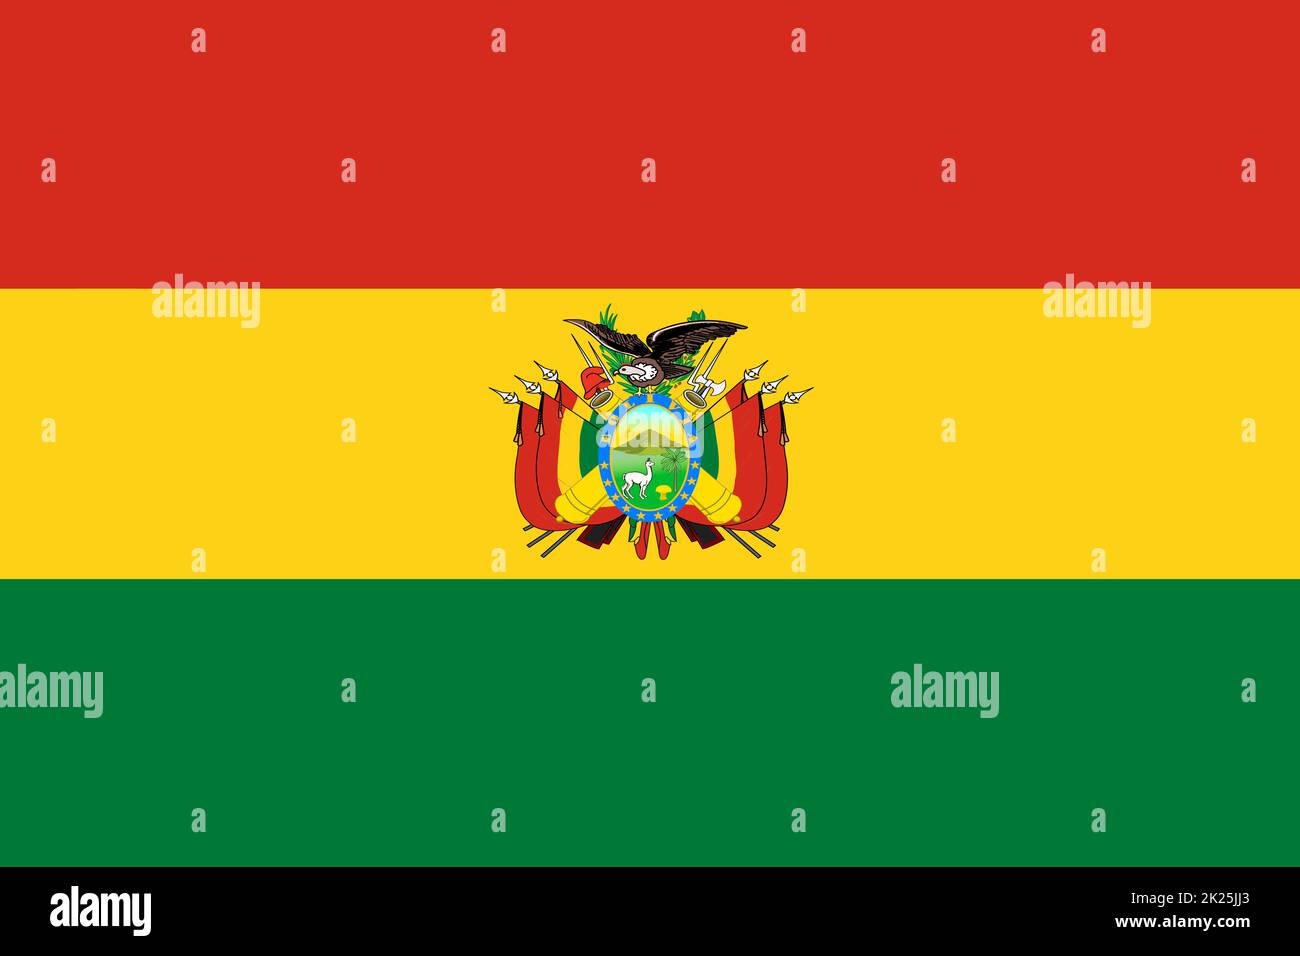 Bolivie drapeau arrière-plan illustration rouge jaune vert manteau des bras Banque D'Images